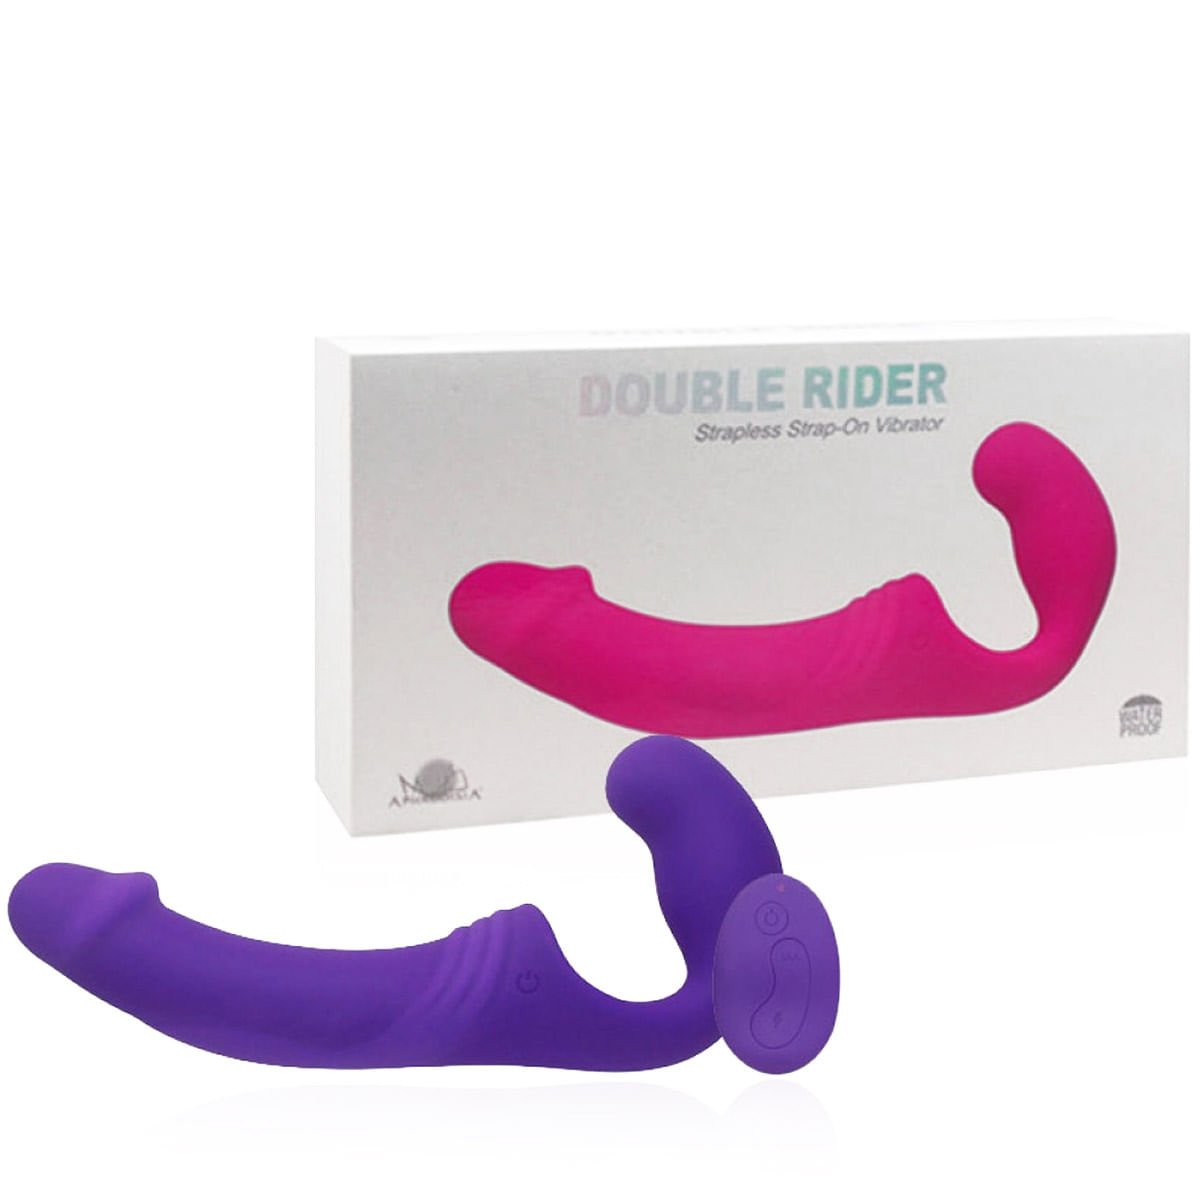 Vibrador Double Rider Recarregável com Plug Vaginal e Controle Remoto Vip Mix